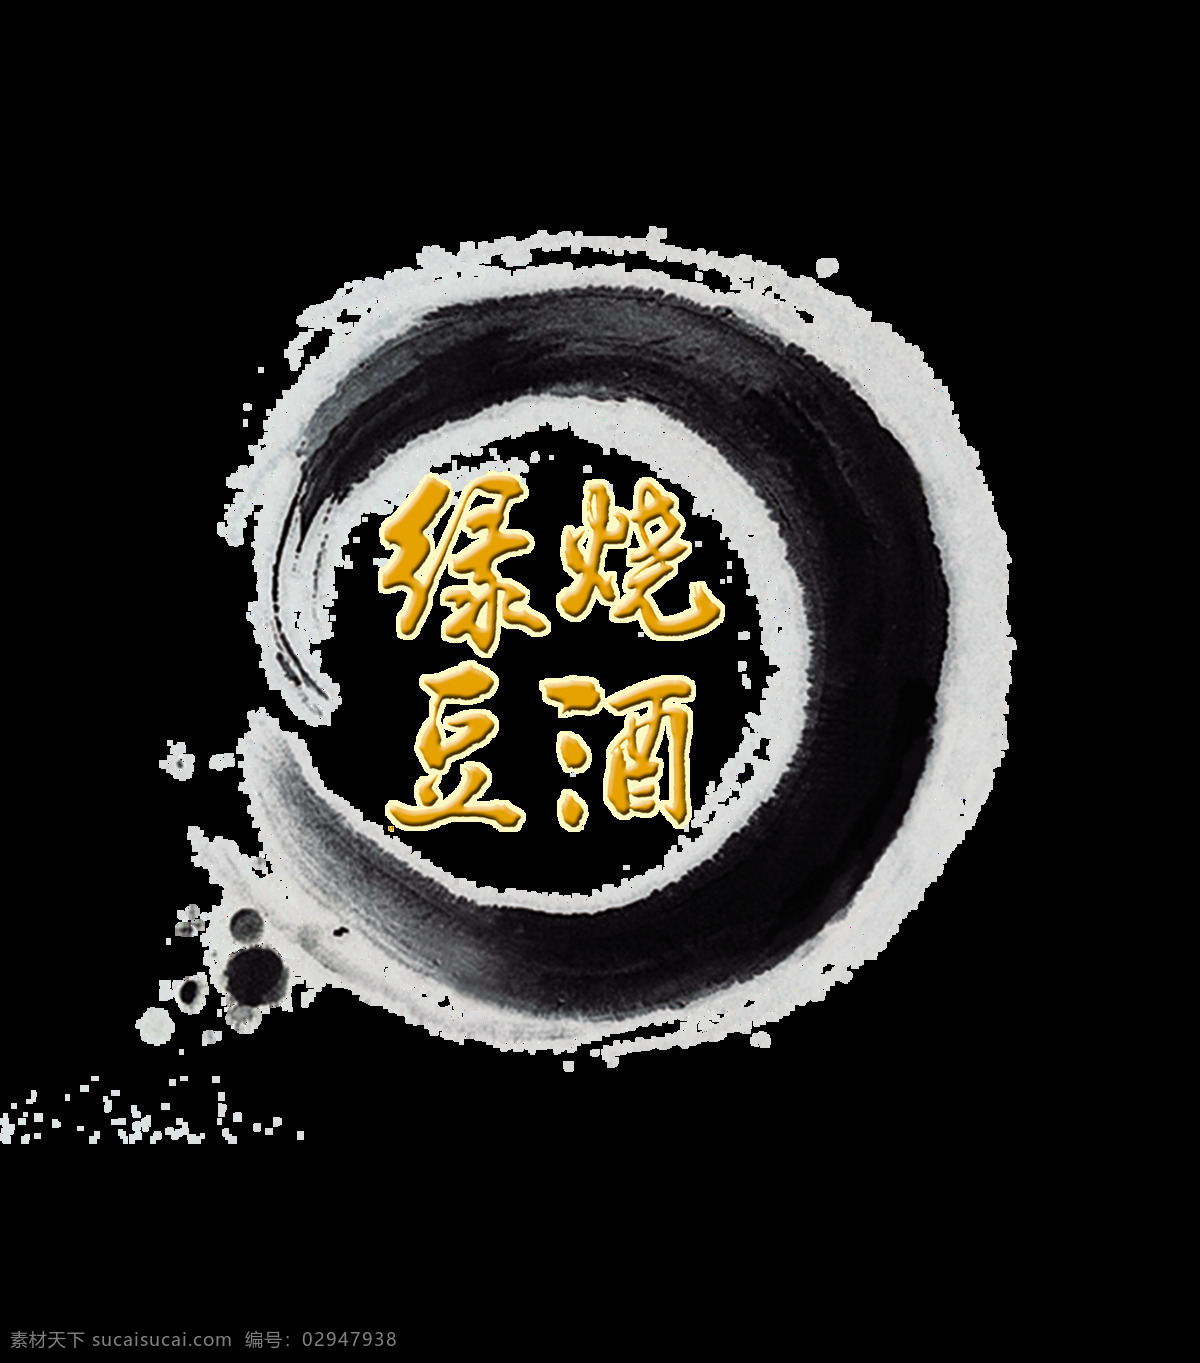 绿豆 烧酒 艺术 字 中国 风 古风 古典 传统 中国风 绿豆烧酒 喝酒 酒鬼 艺术字 海报